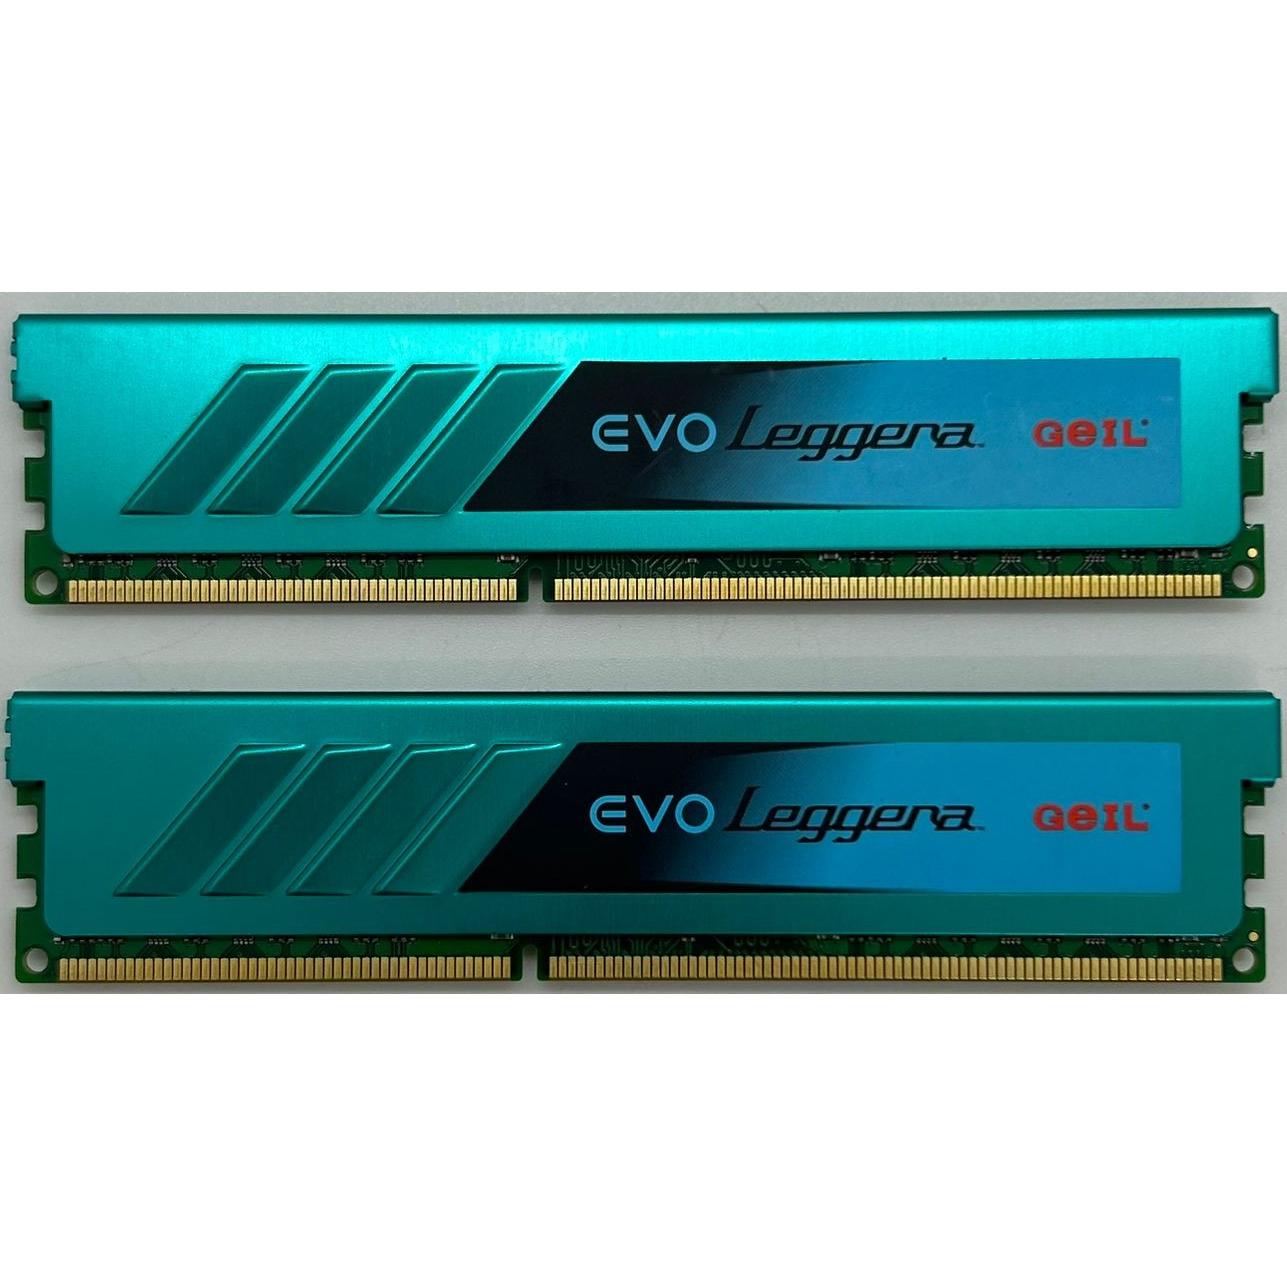 GeIL EVO Leggera DDR3 1866MHz 16GB (2x 8GB) | GEL332GB1866C10QC